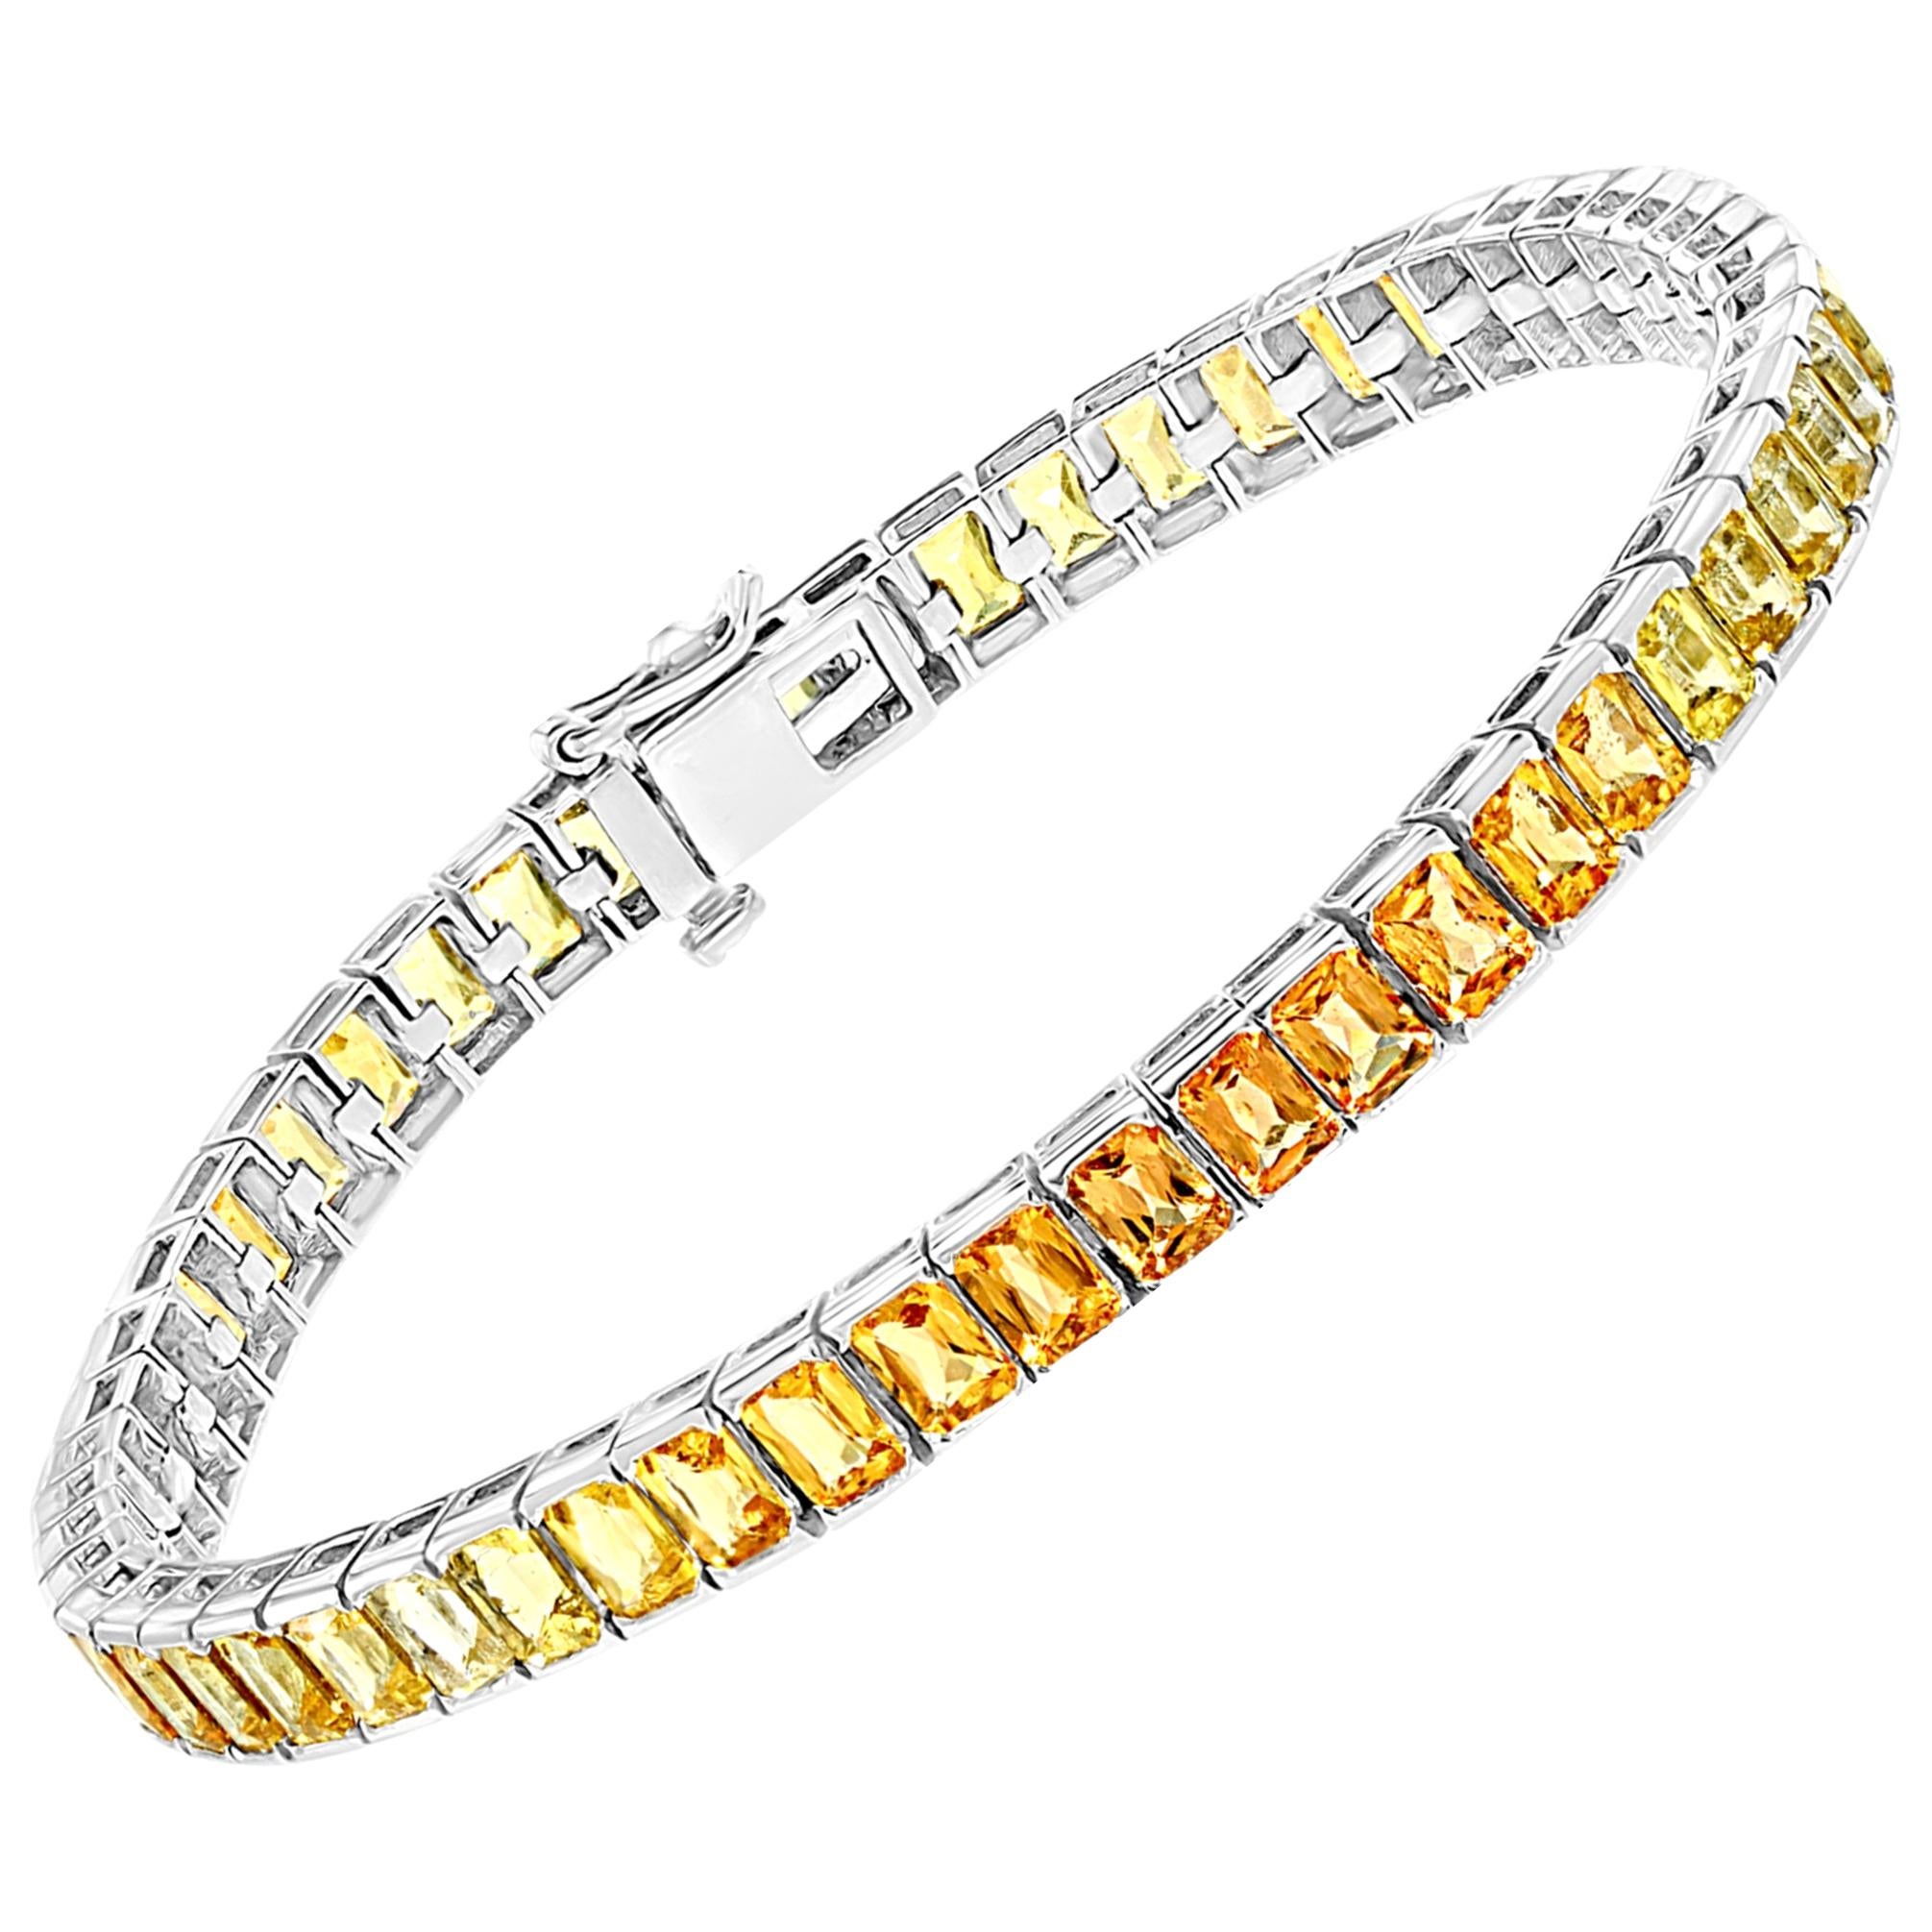 20 Carat Genuine Natural Yellow Sapphires Tennis Bracelet 14 Karat White Gold